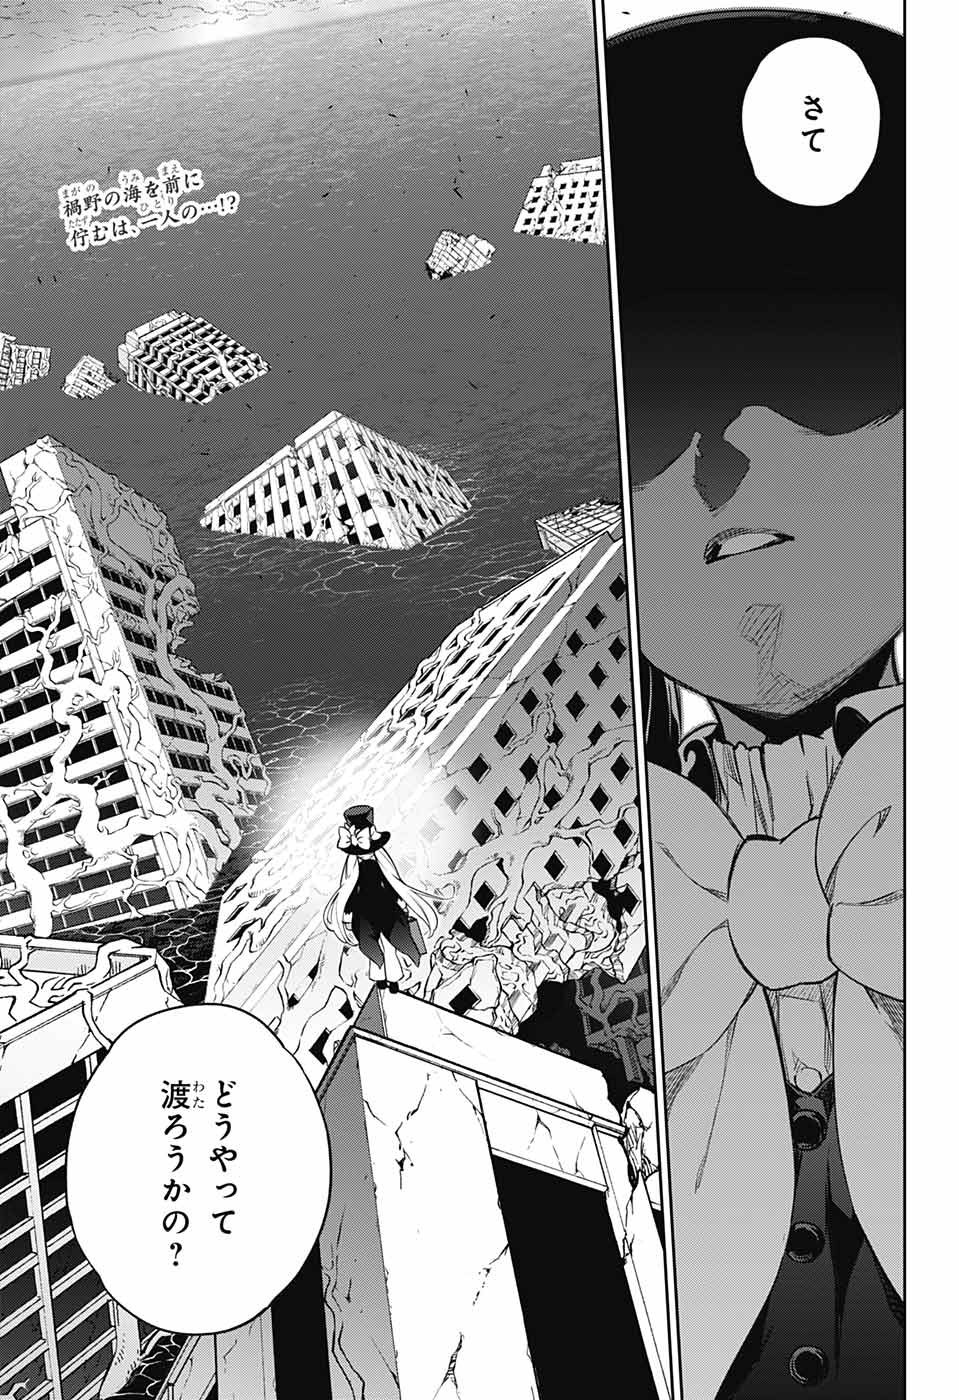 Sousei no Onmyouji - Chapter 111 - Page 3